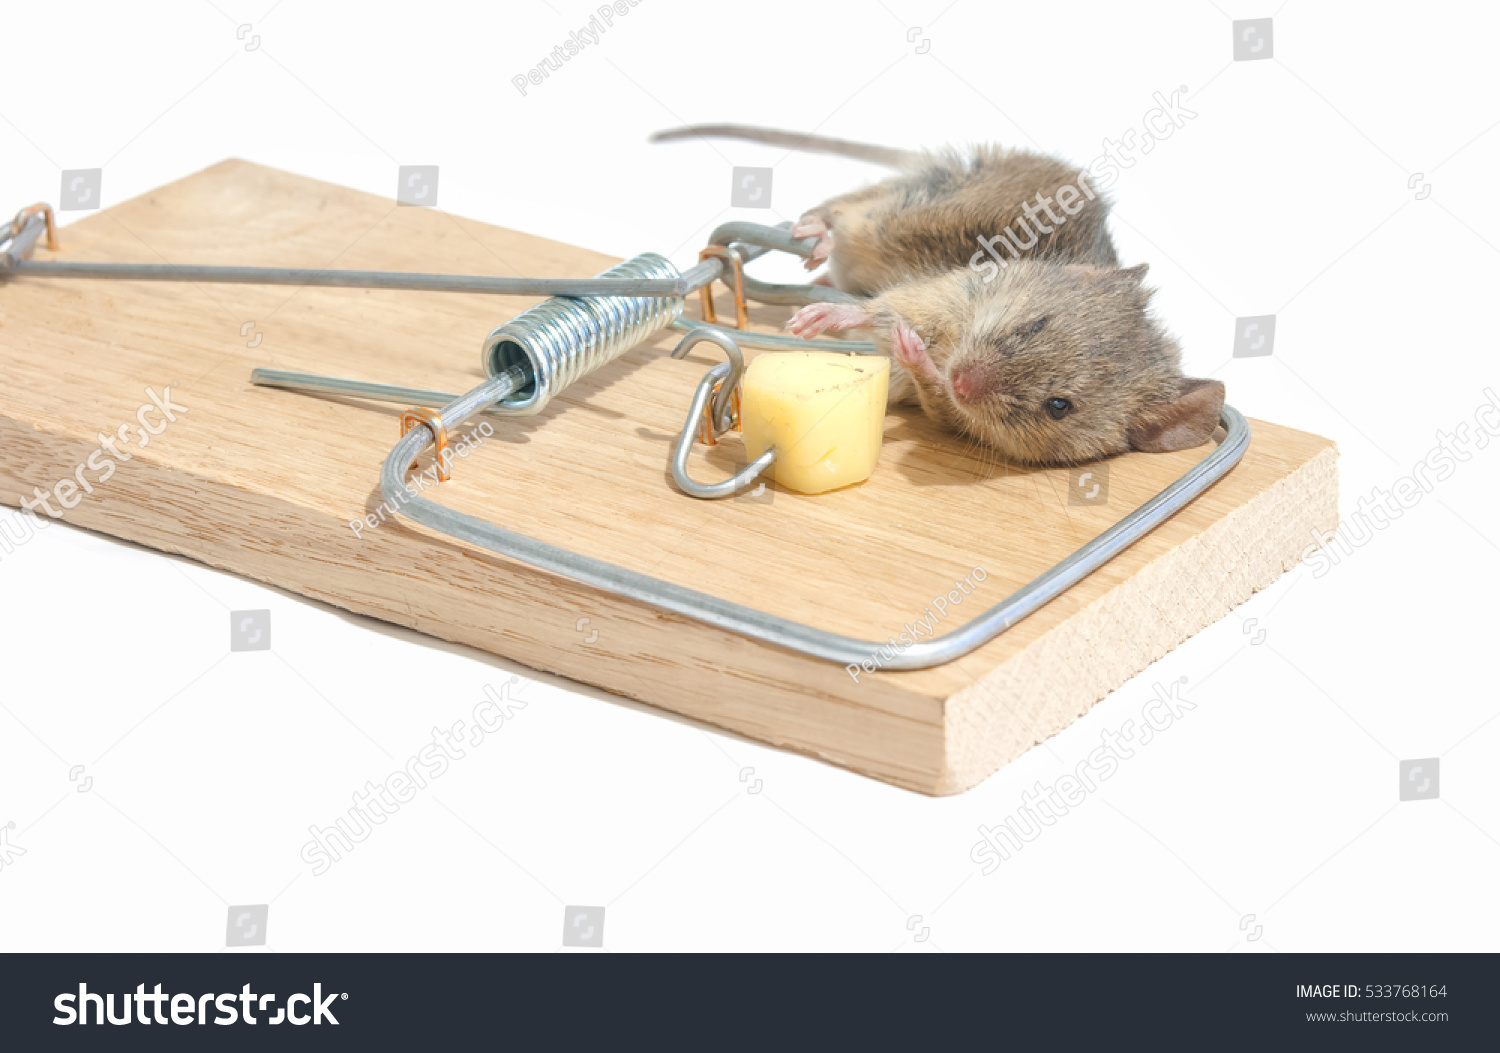 Капкан для мышей деревянный